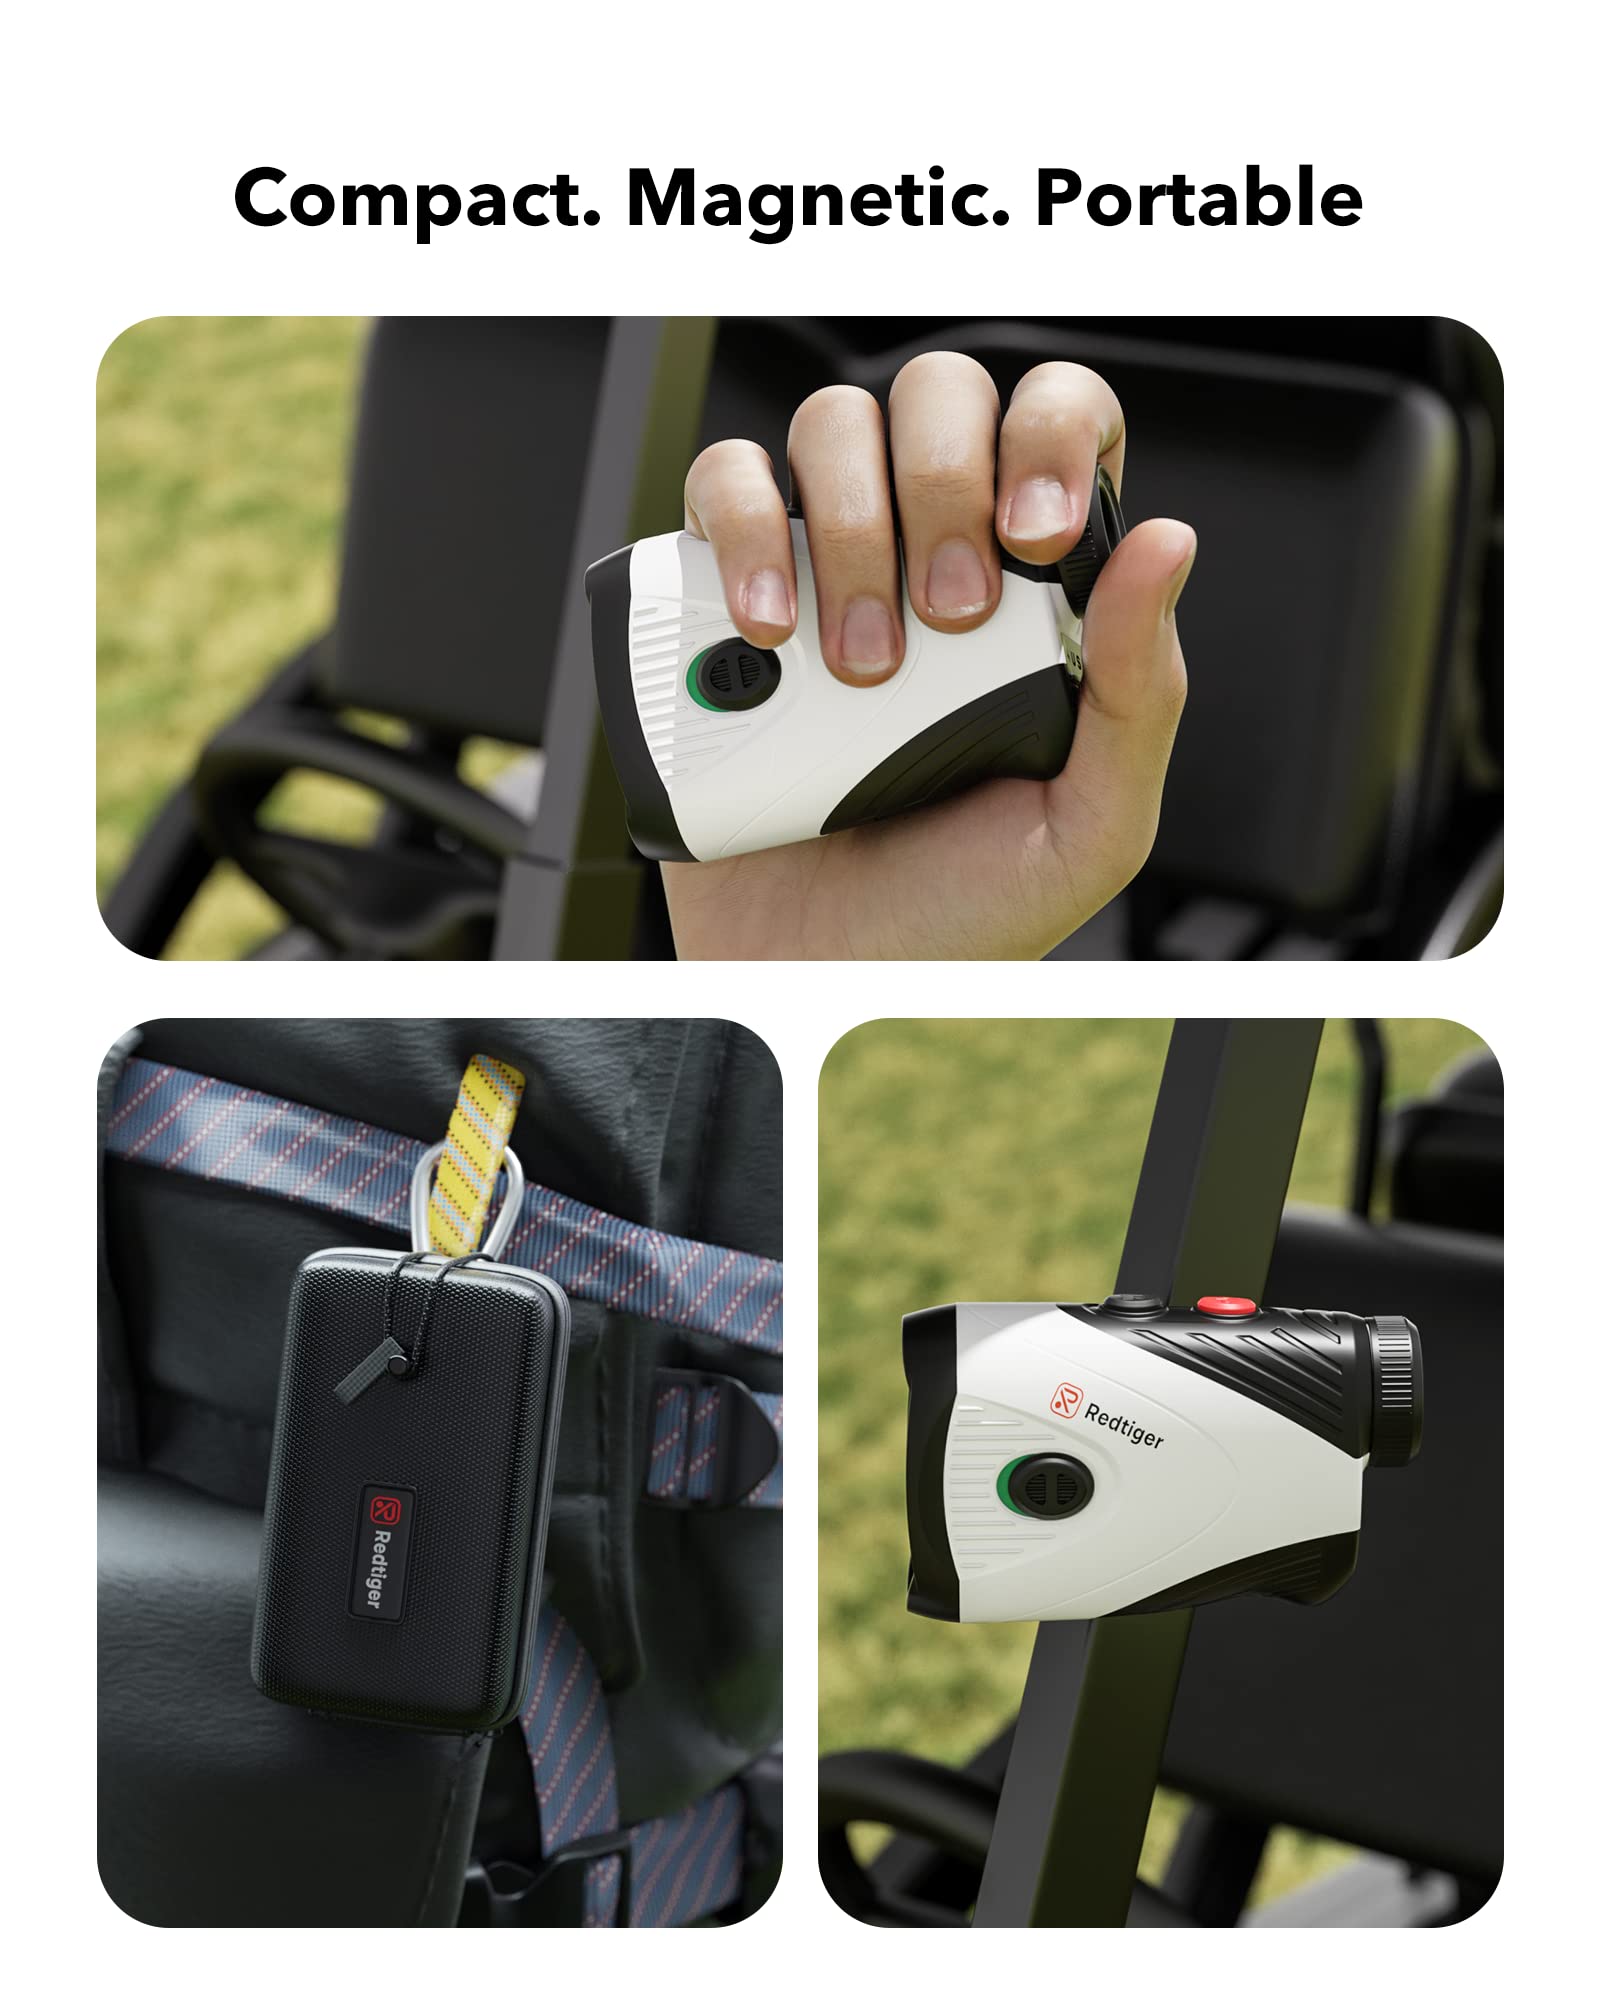 REDTIGER Golf Rangefinder with Slope, 1200 Yards Laser Range Finder Golfing, 7X Magnification Hot Sales REDTIGER Dash Cam   